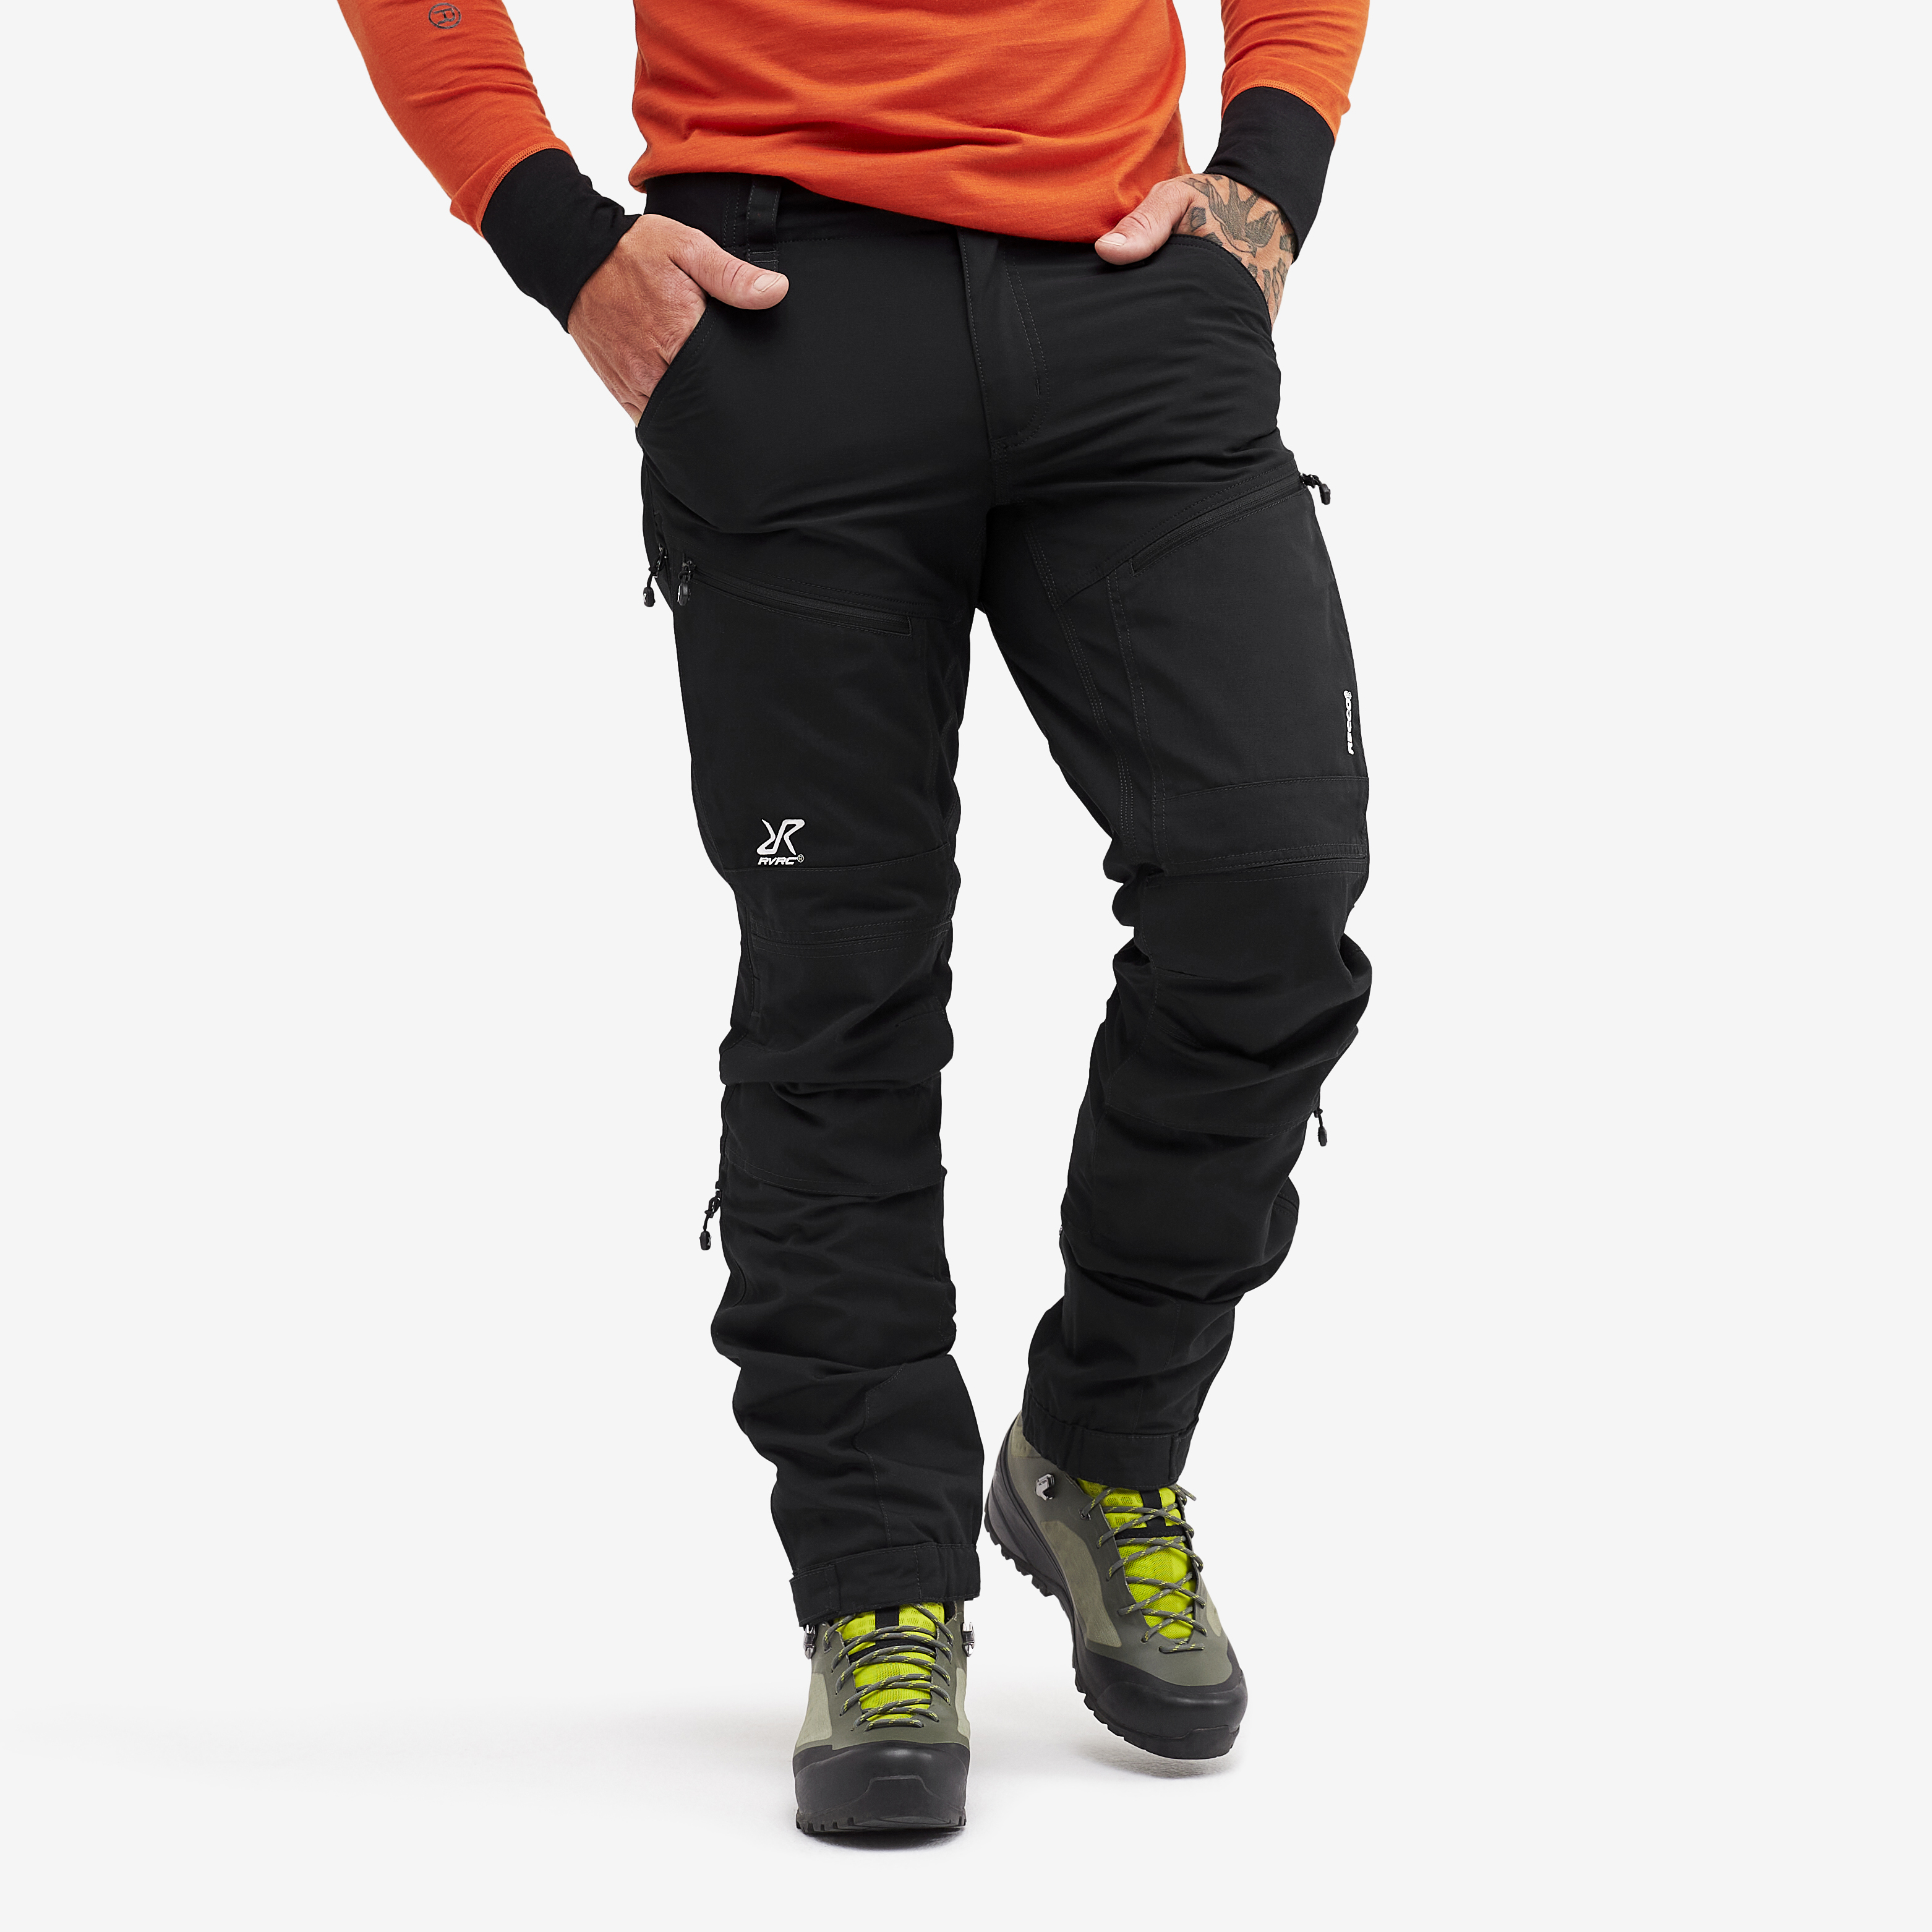 RVRC GP Pro Rescue turistické kalhoty pro muže v černé barvě